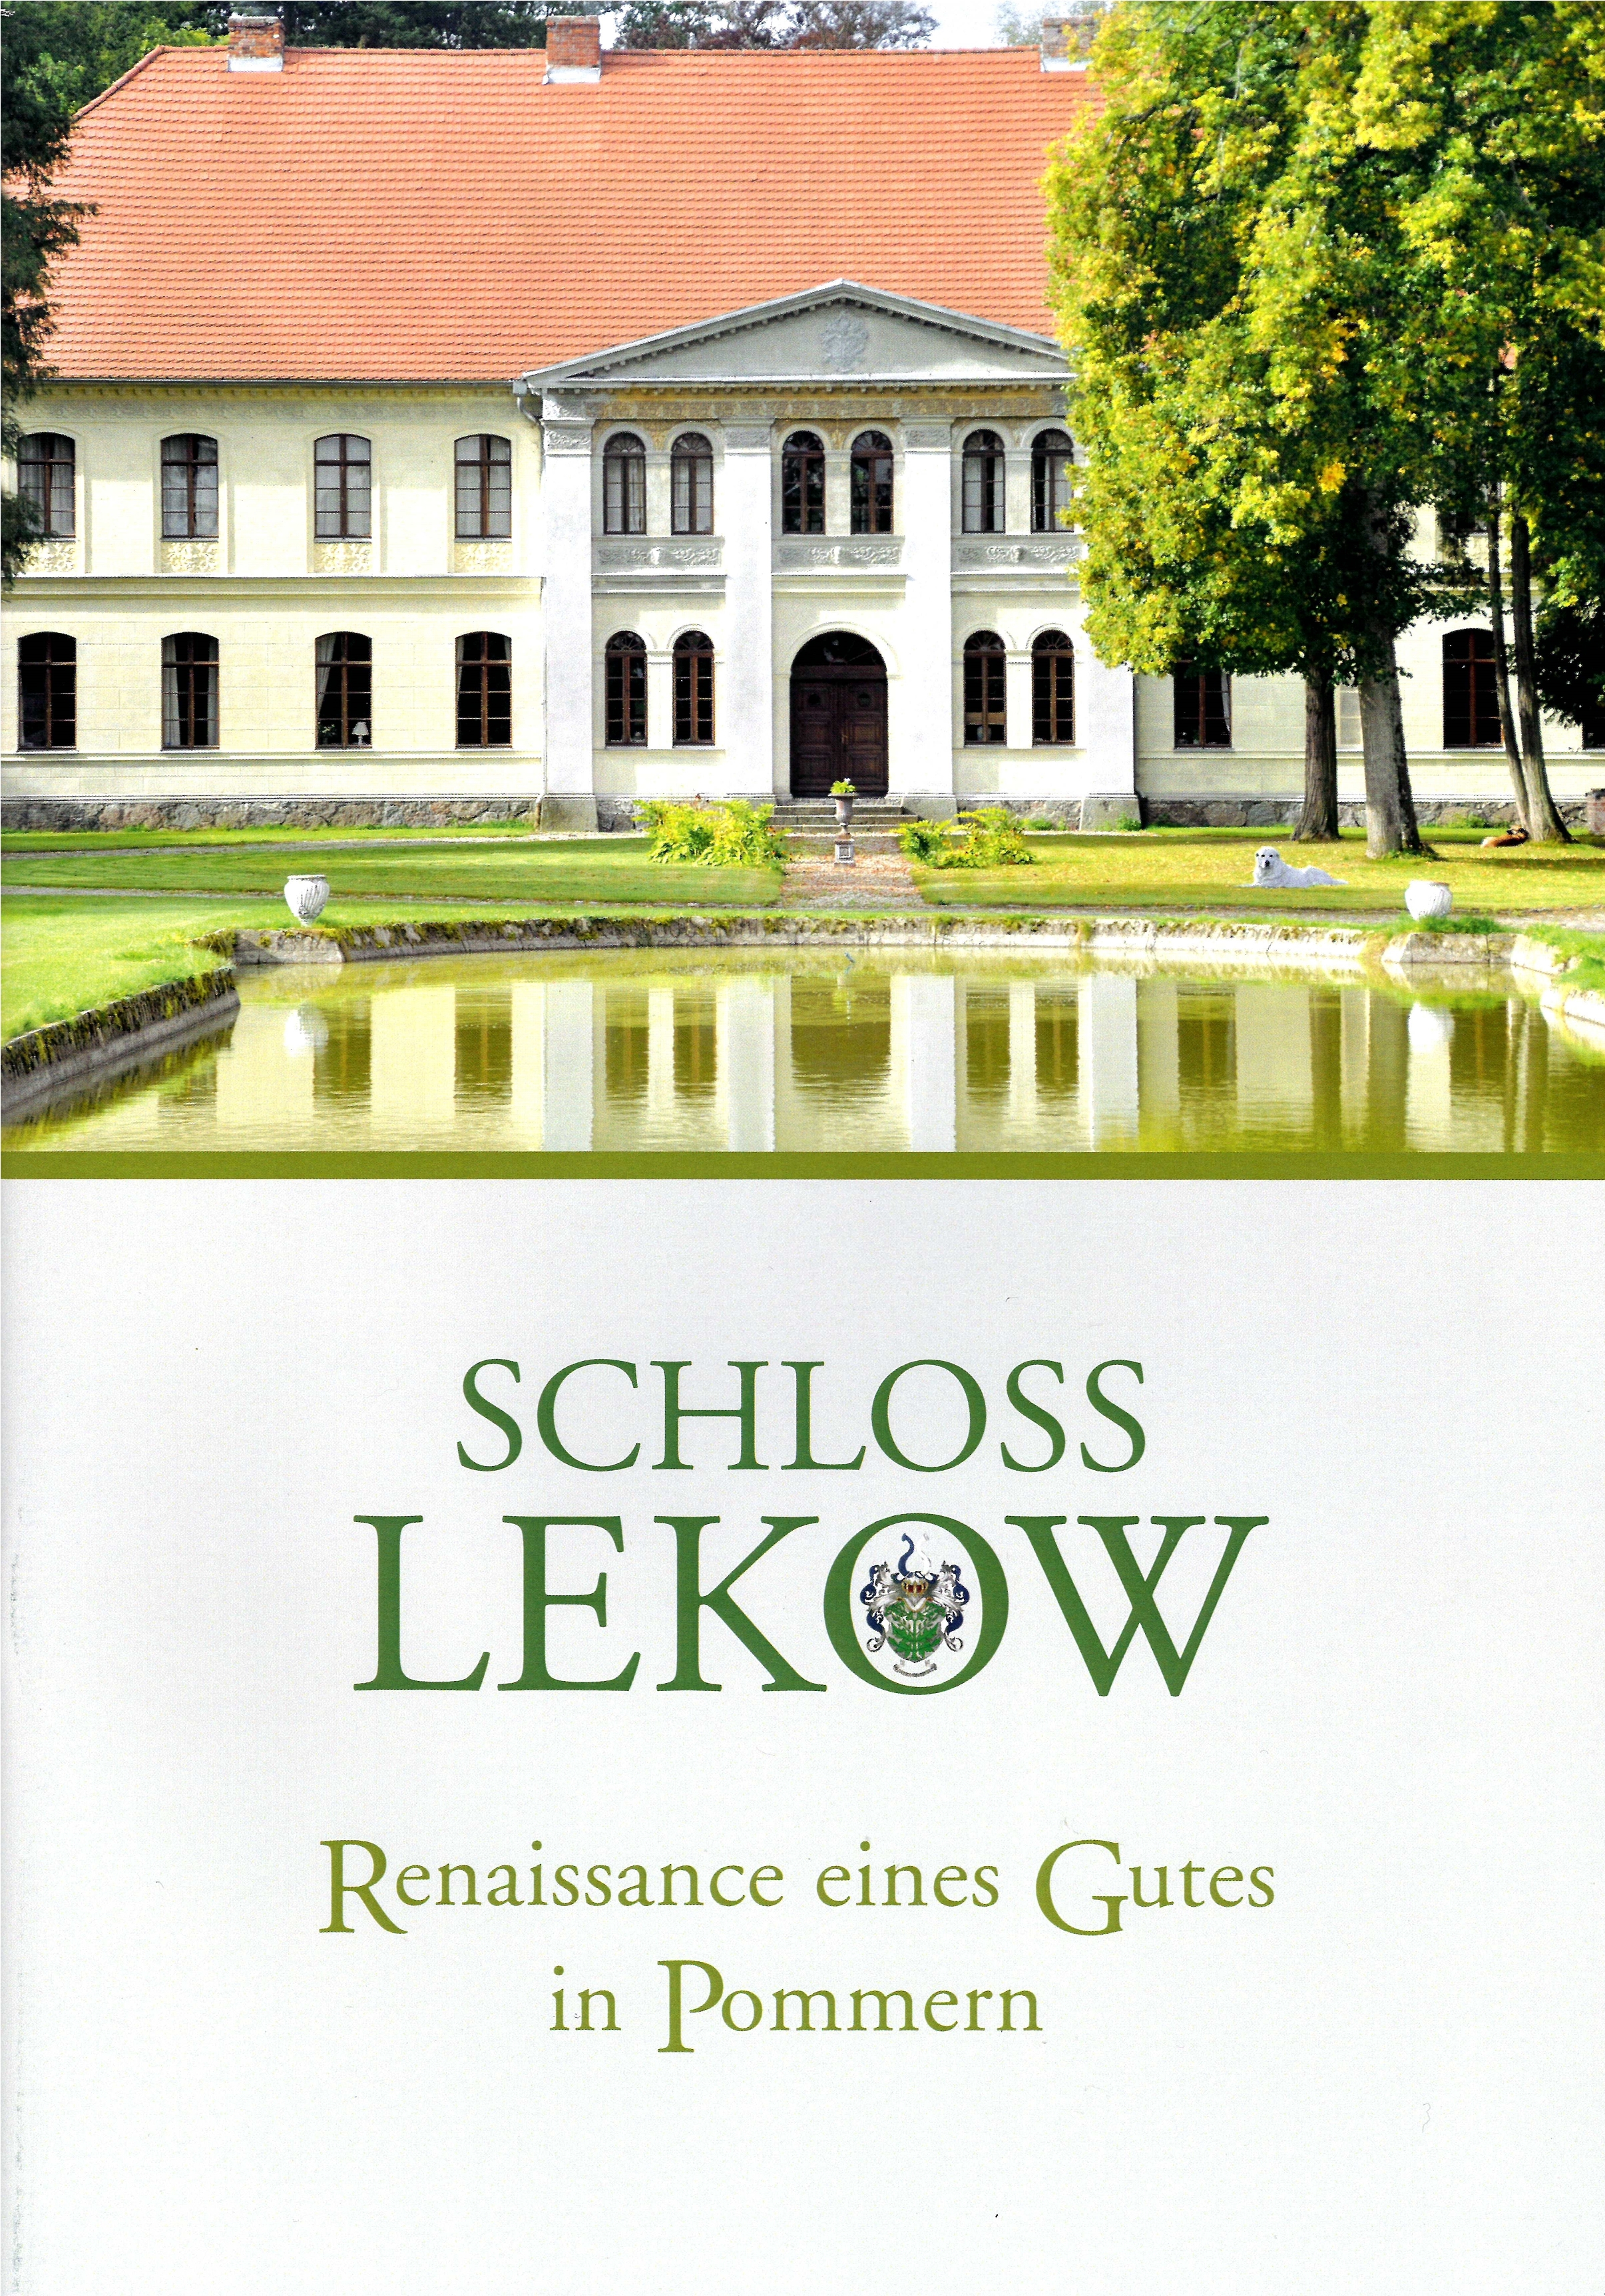 Schloss Lekow - Renaissance eines Gutes in Pommern